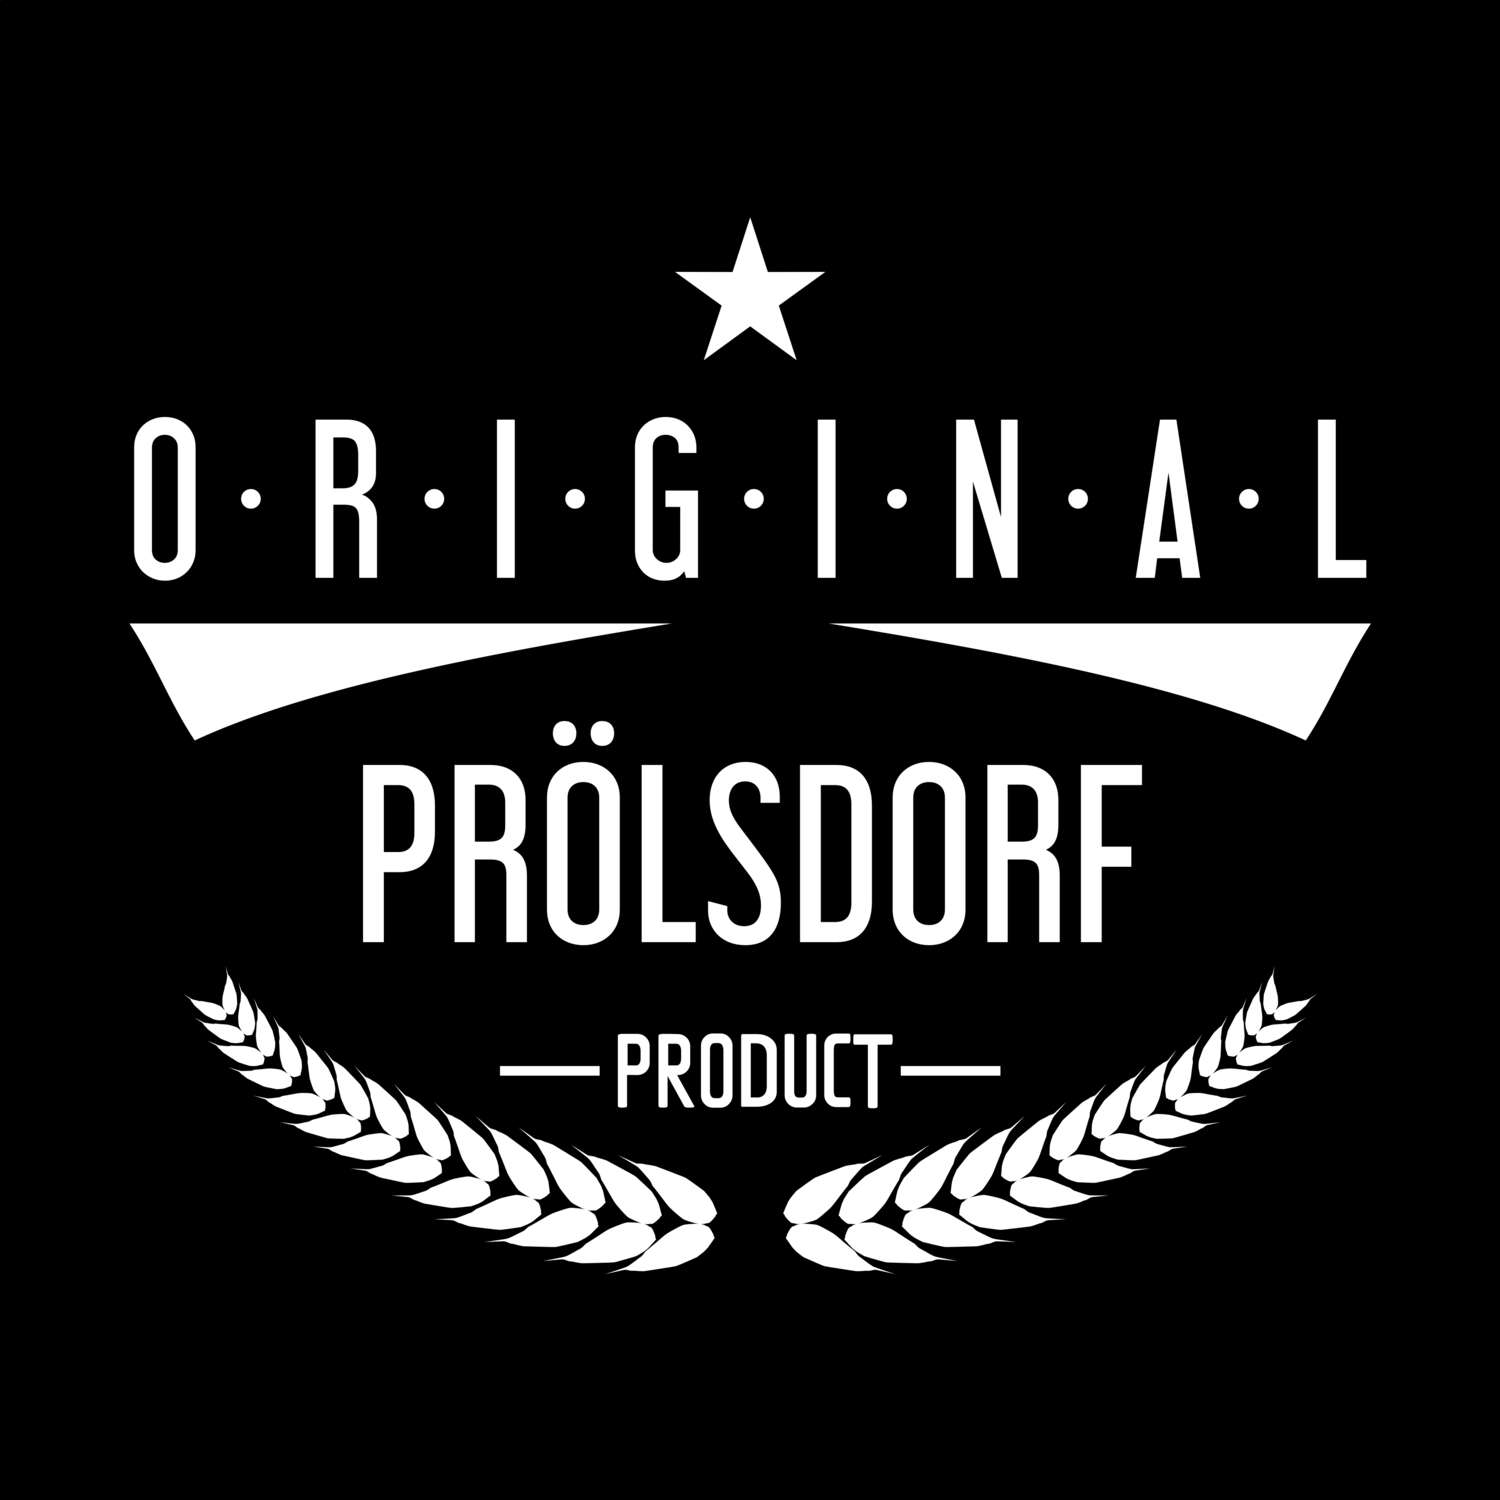 Prölsdorf T-Shirt »Original Product«